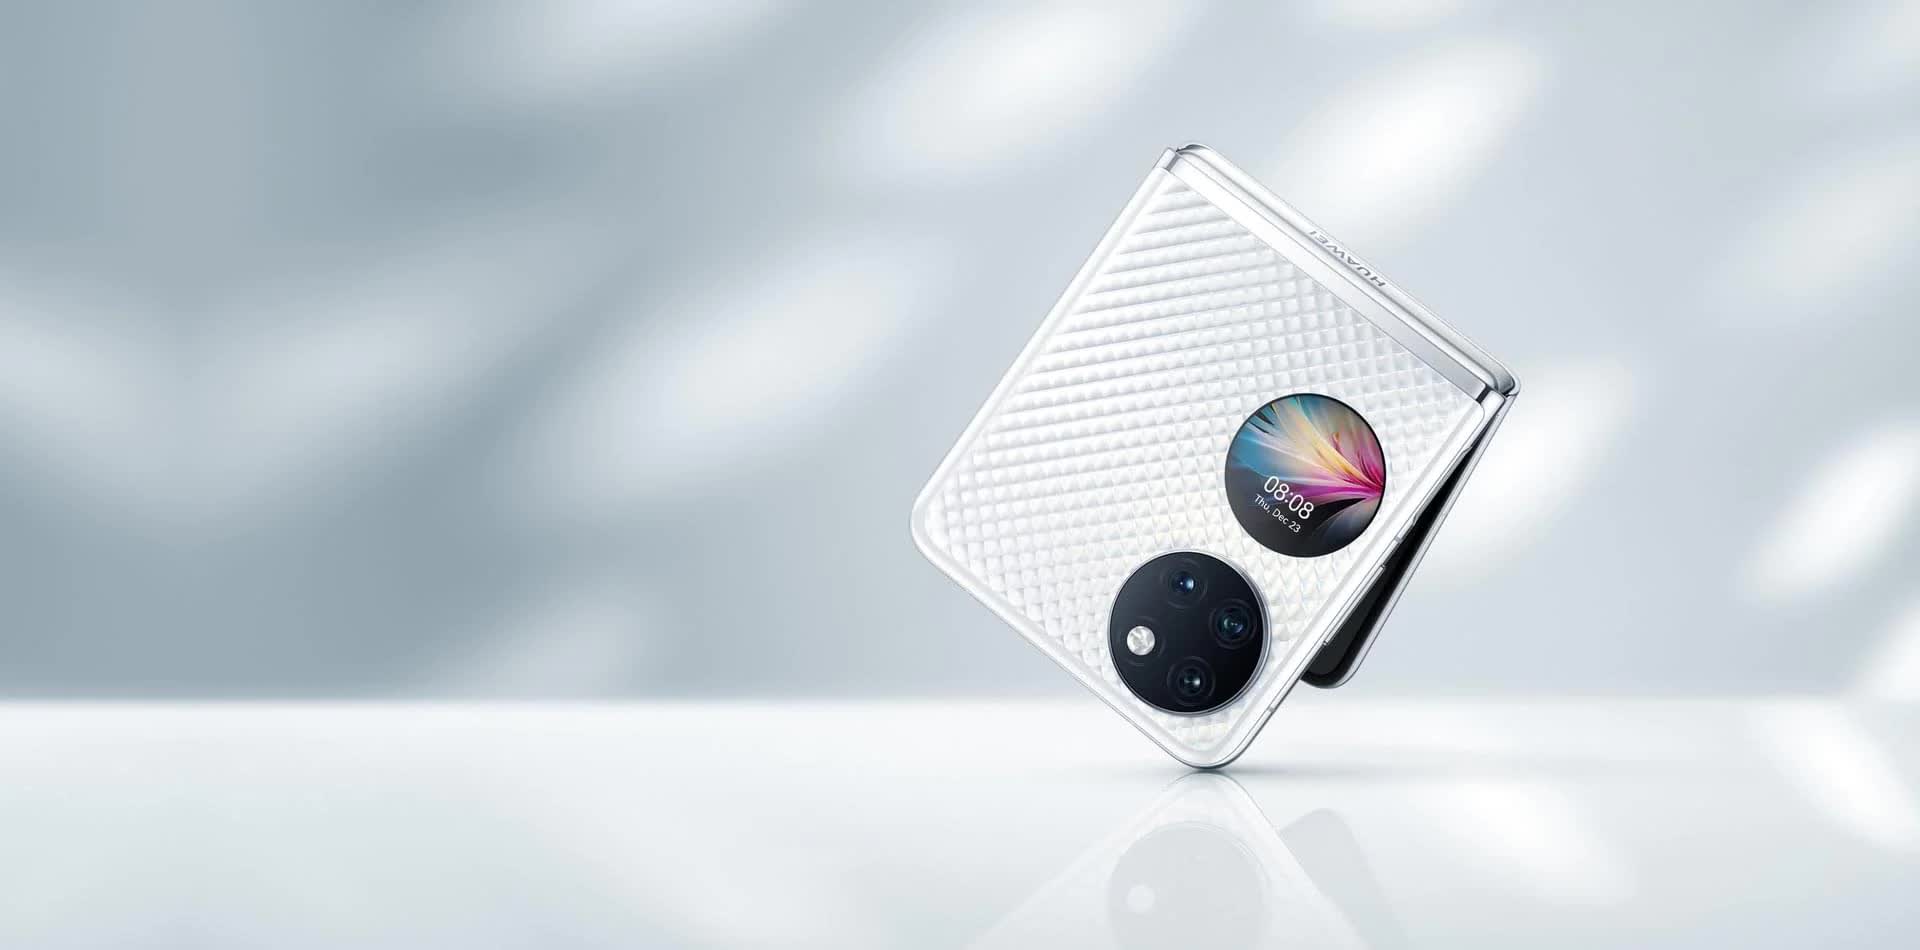 Huawei's P50 Pocket is a fancier Galaxy Z Flip 3 alternative that costs $1,400